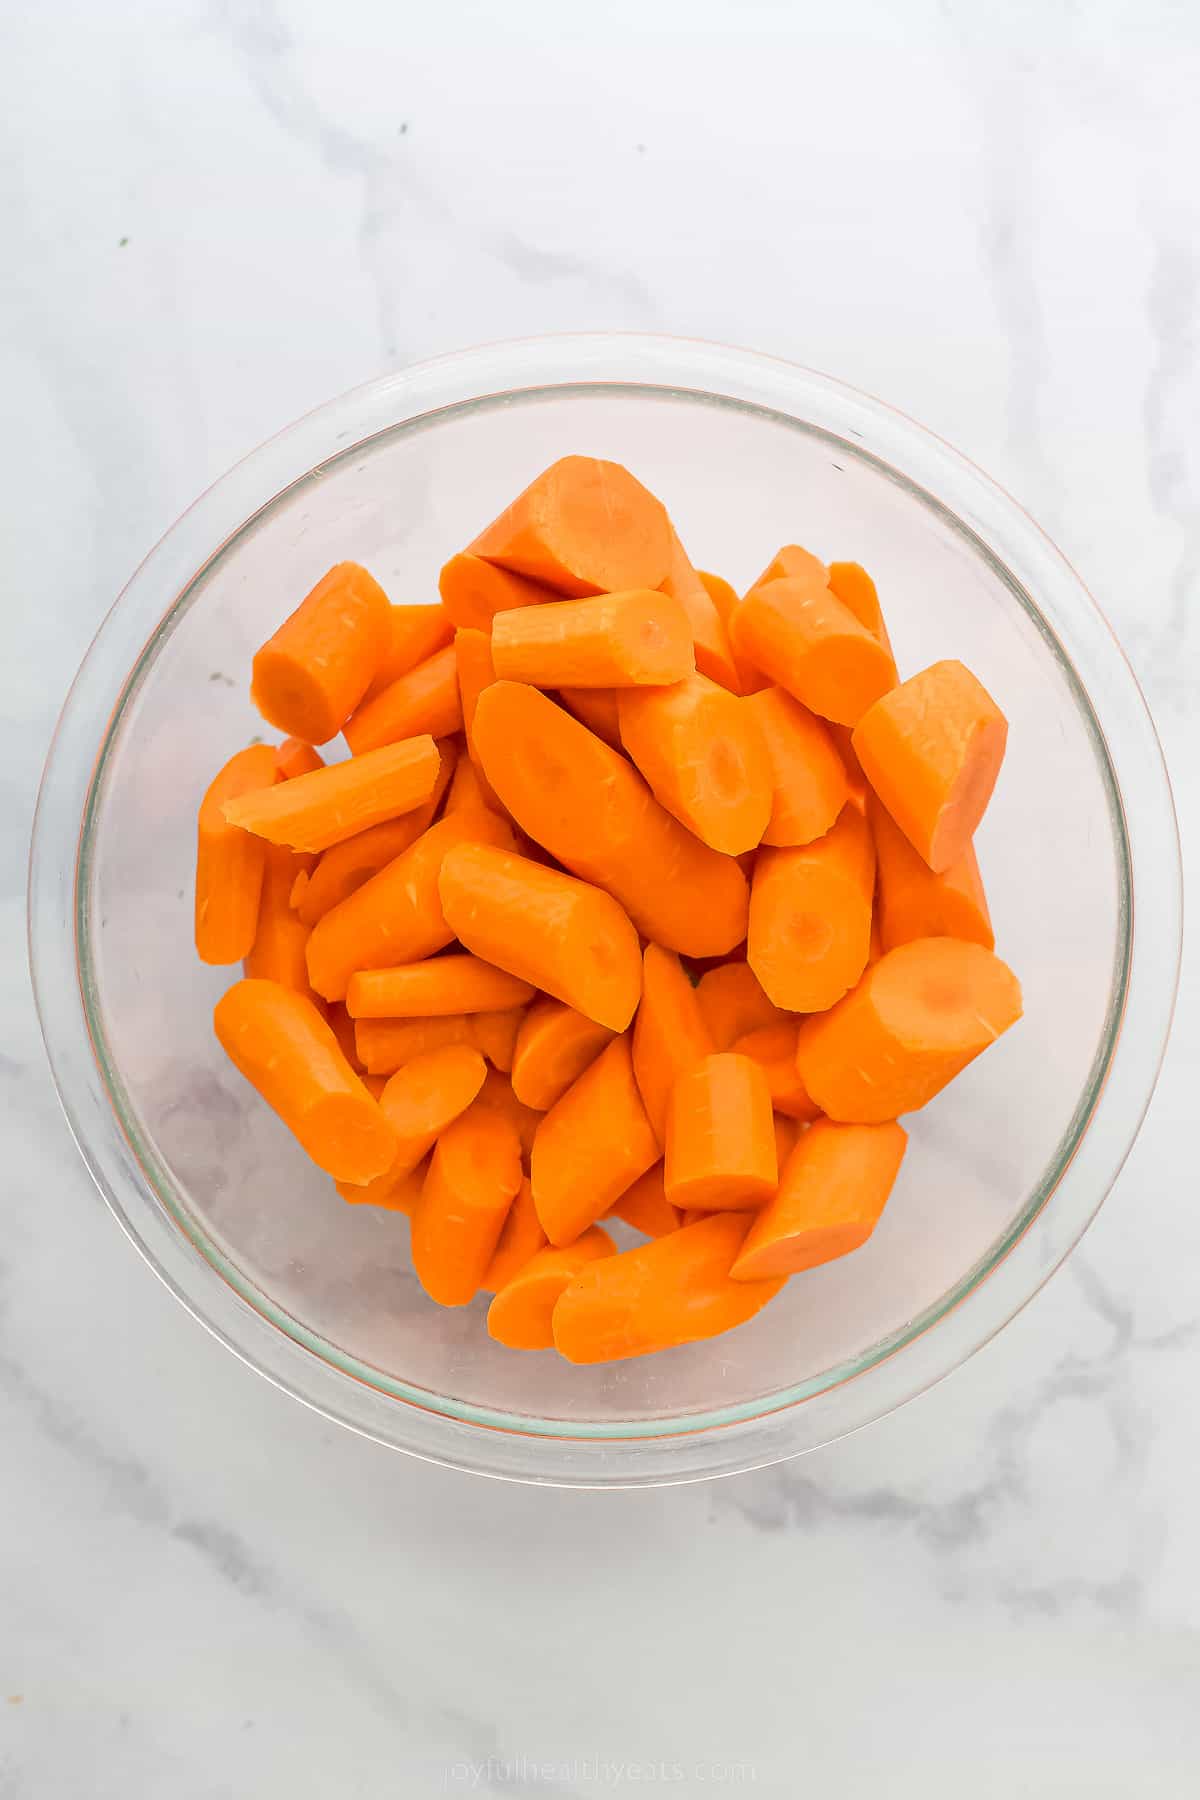 a bowl of cut up carrots